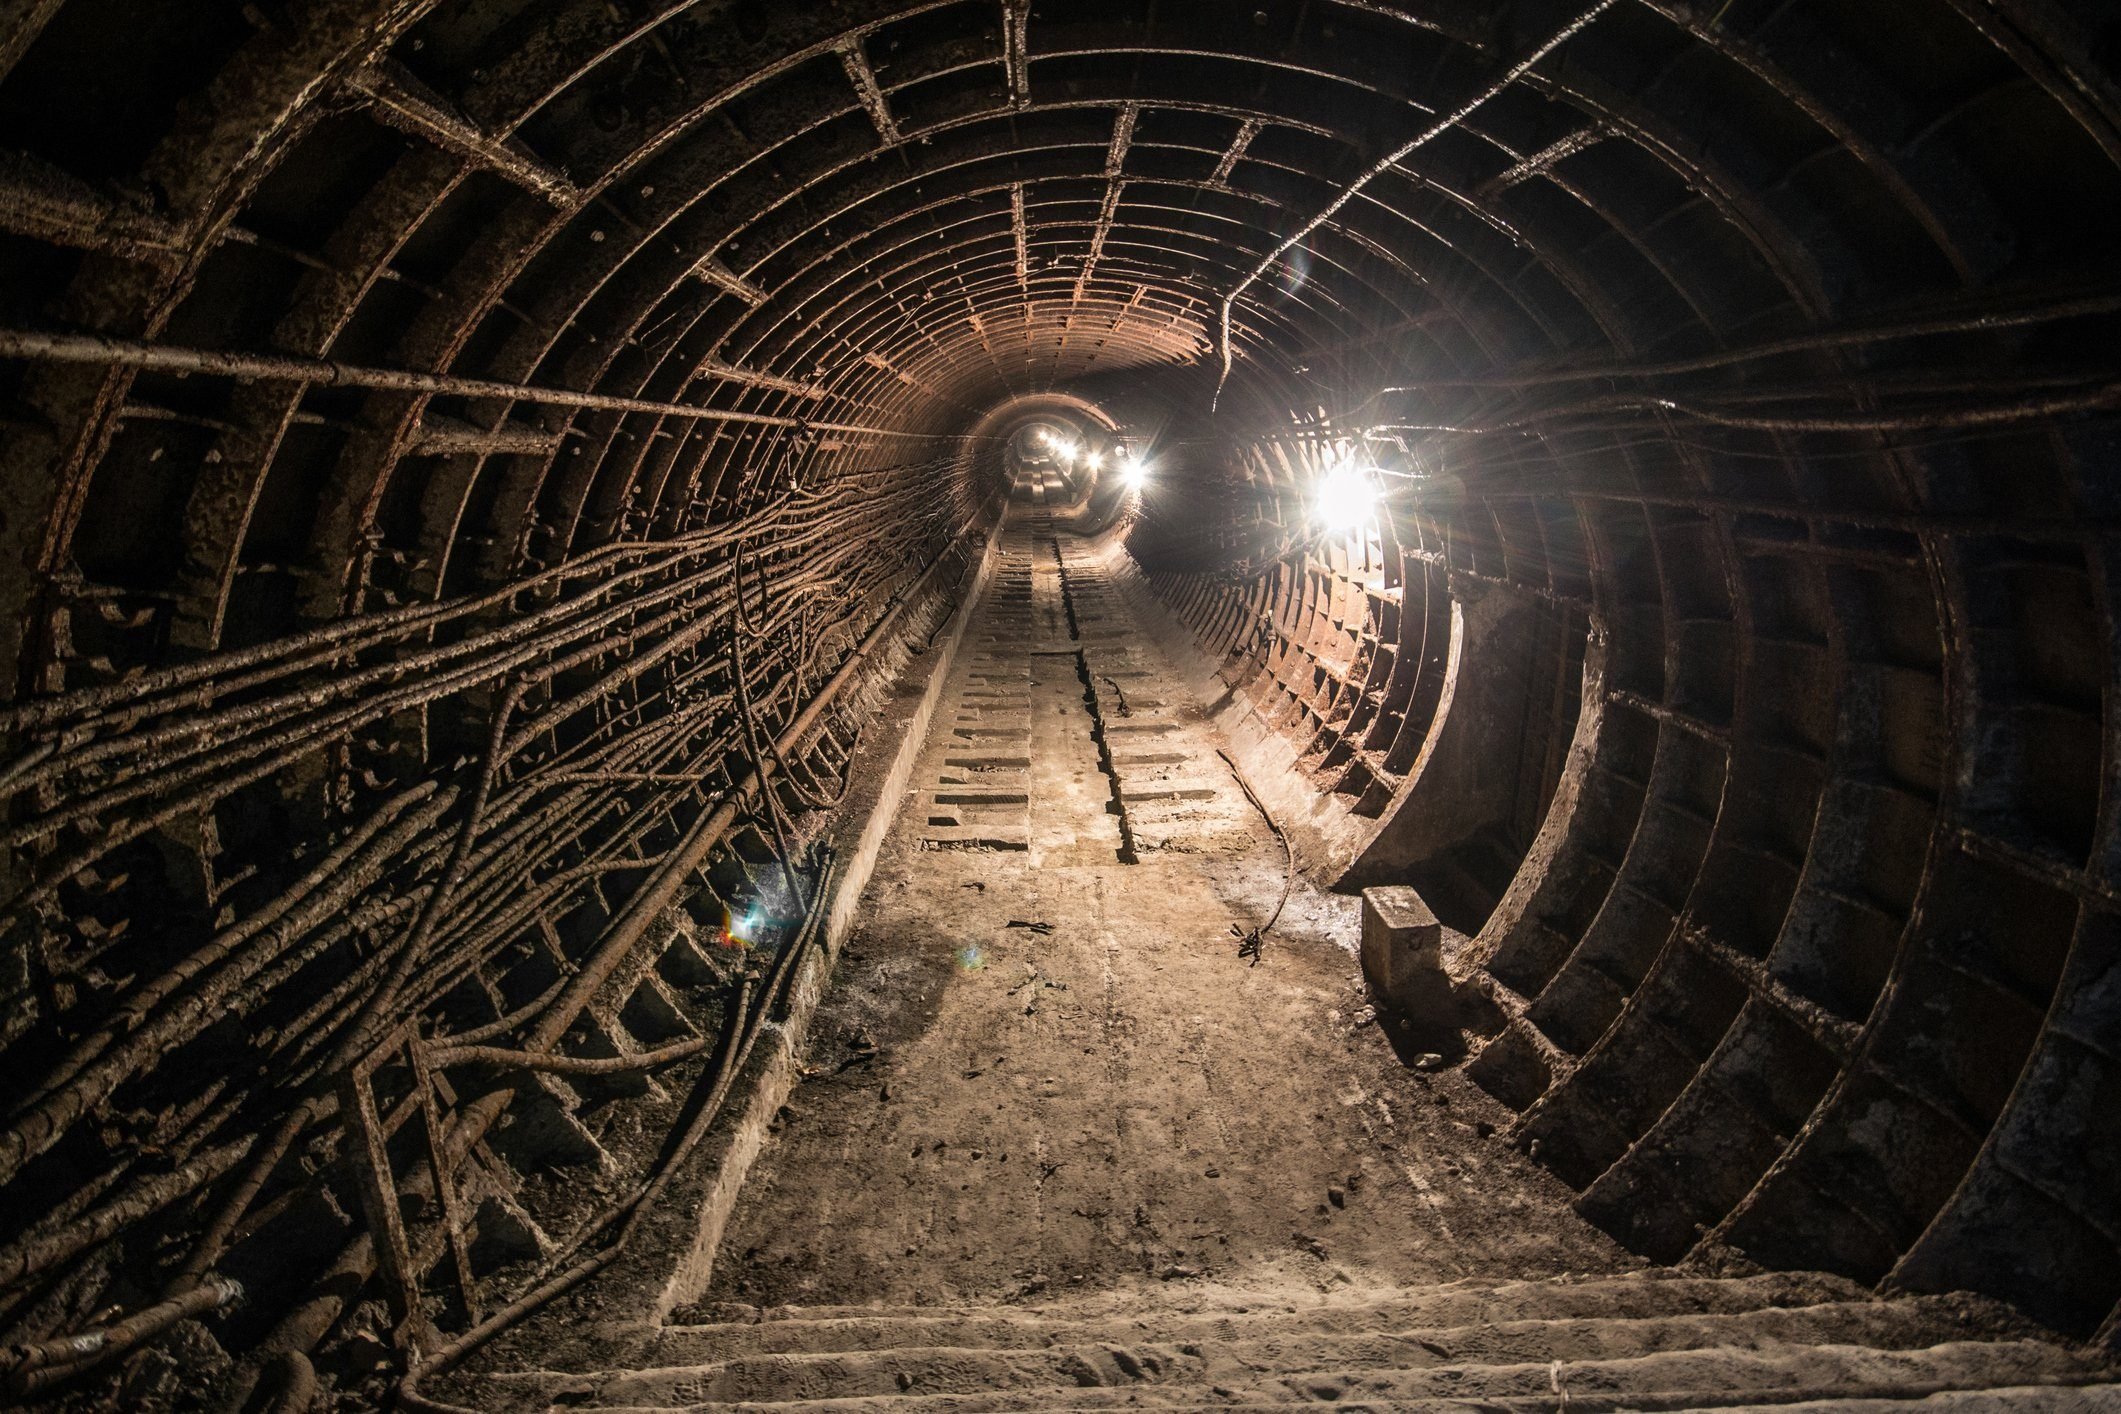 Abandoned subway tunnel. Kiev, Ukraine. Kyiv, Ukraine